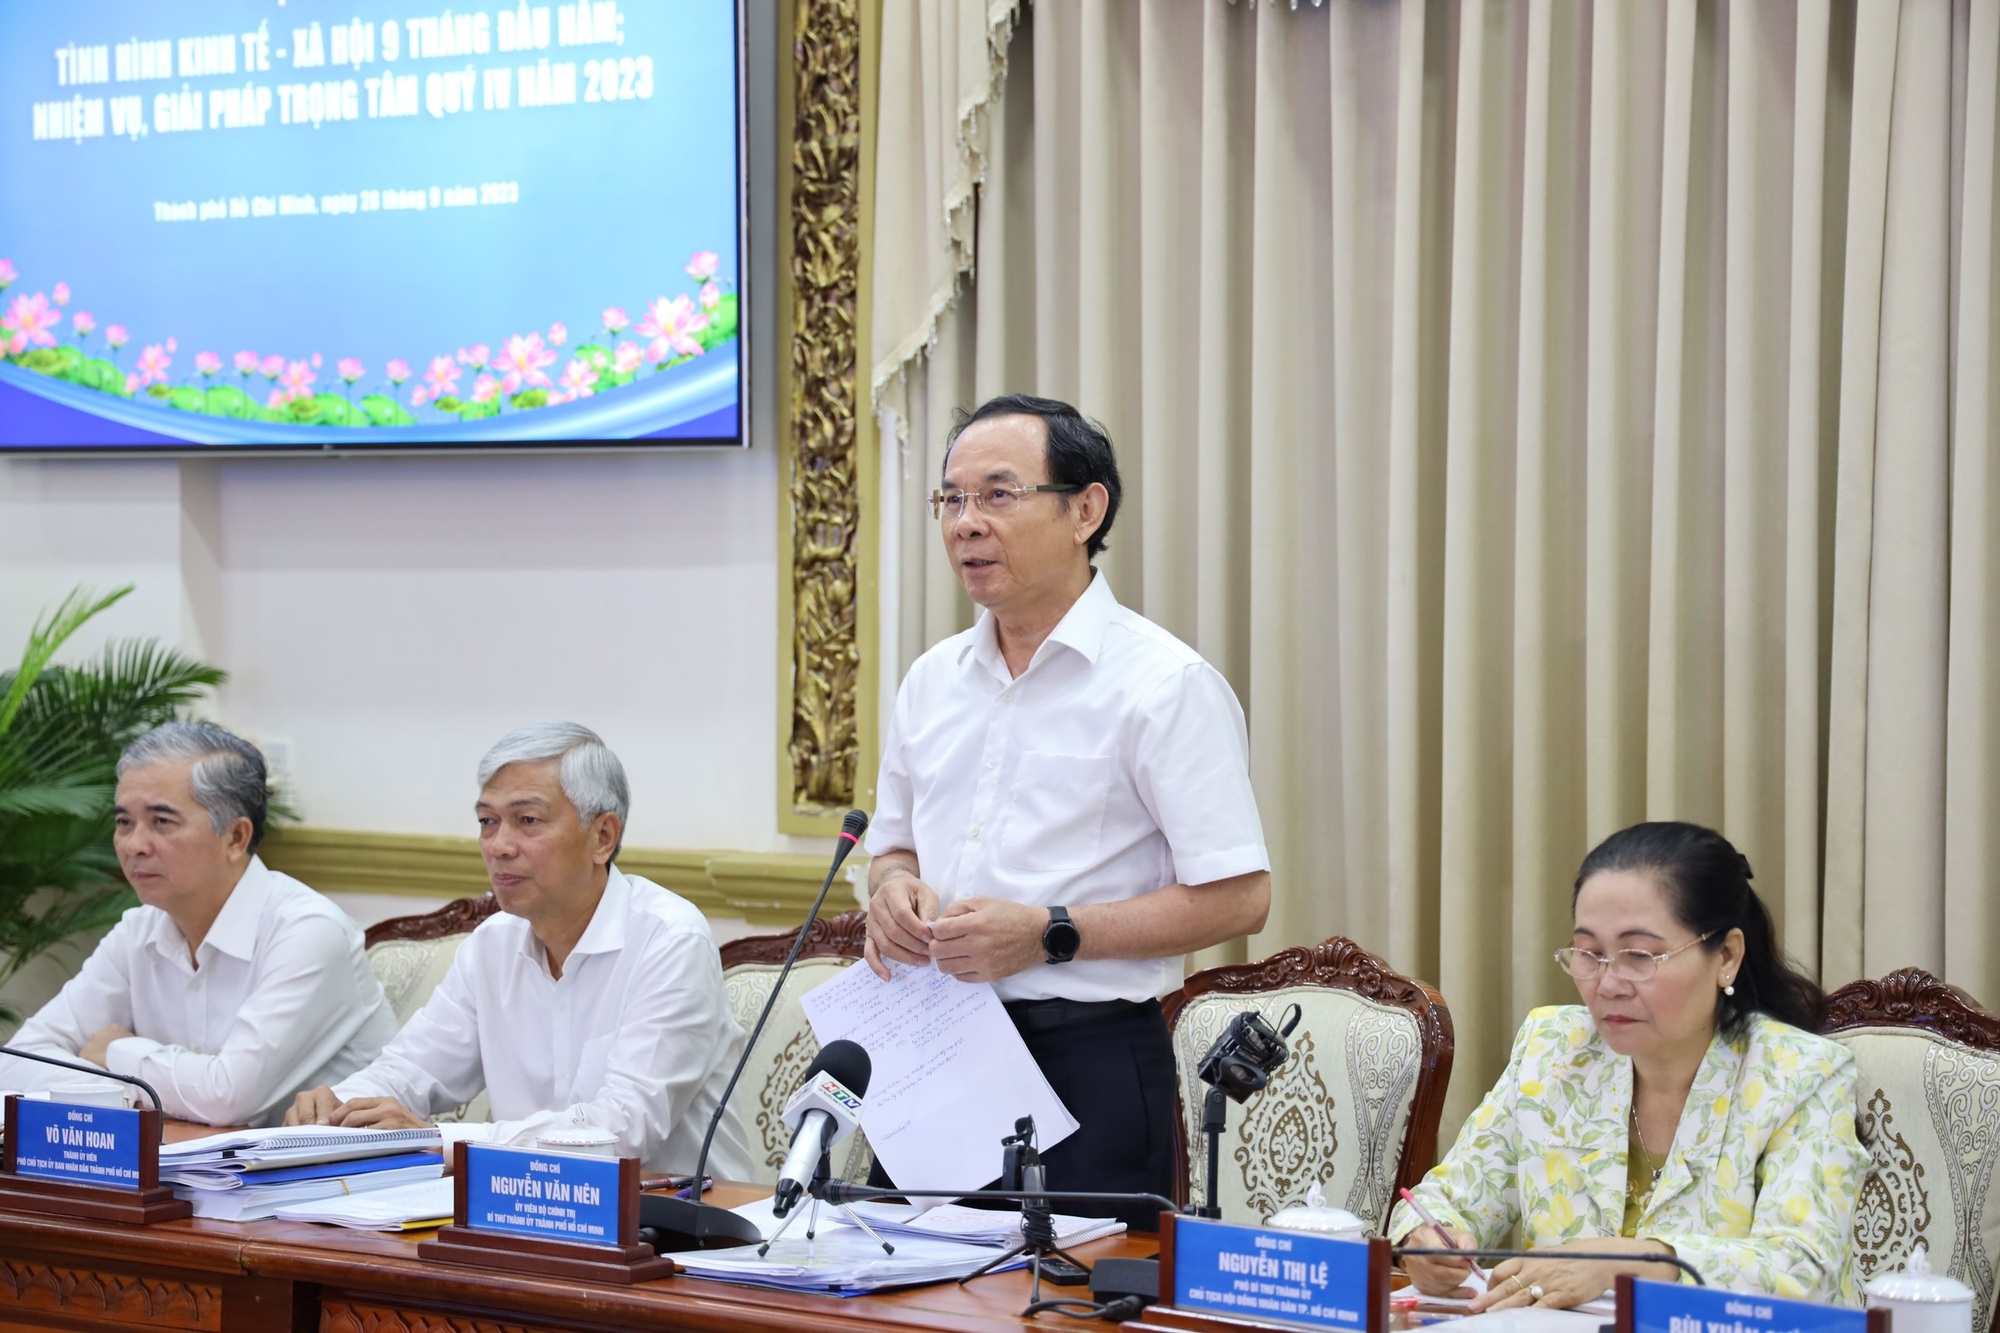 Bí thư TP.HCM Nguyễn Văn Nên: Thành ủy sẽ họp bàn cách cải thiện đầu tư công trong tháng 10 - Ảnh 1.